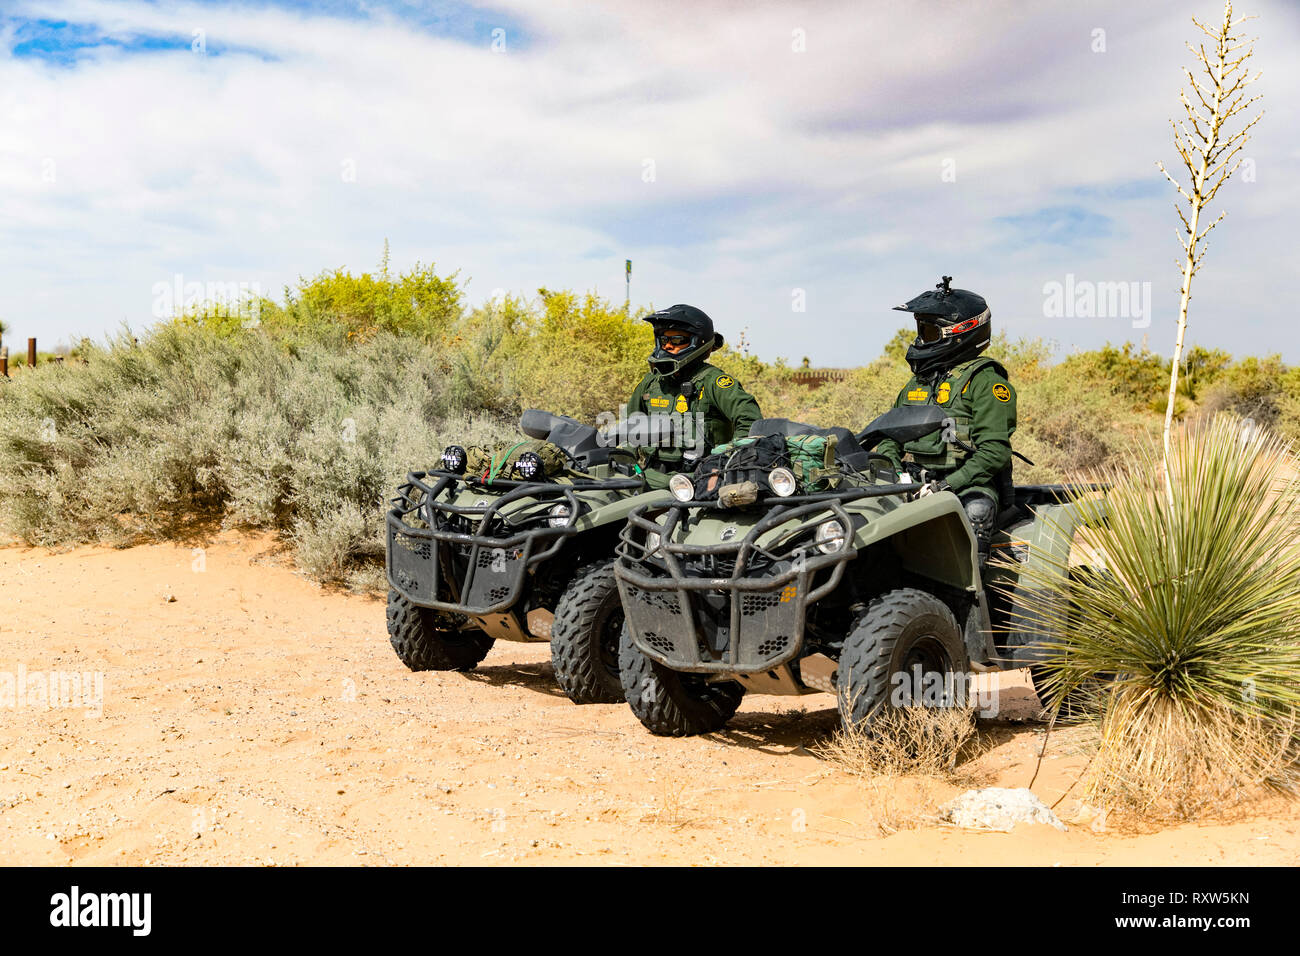 Us-amerikanischen Zoll- und Grenzschutzbehörde (USCBP) Offiziere bewachen die US-Mexiko internationale Grenze in der Nähe des Santa Teresa der Einreise in New Mexico auf Quad-bikes. Weitere Informationen finden Sie unten. Stockfoto